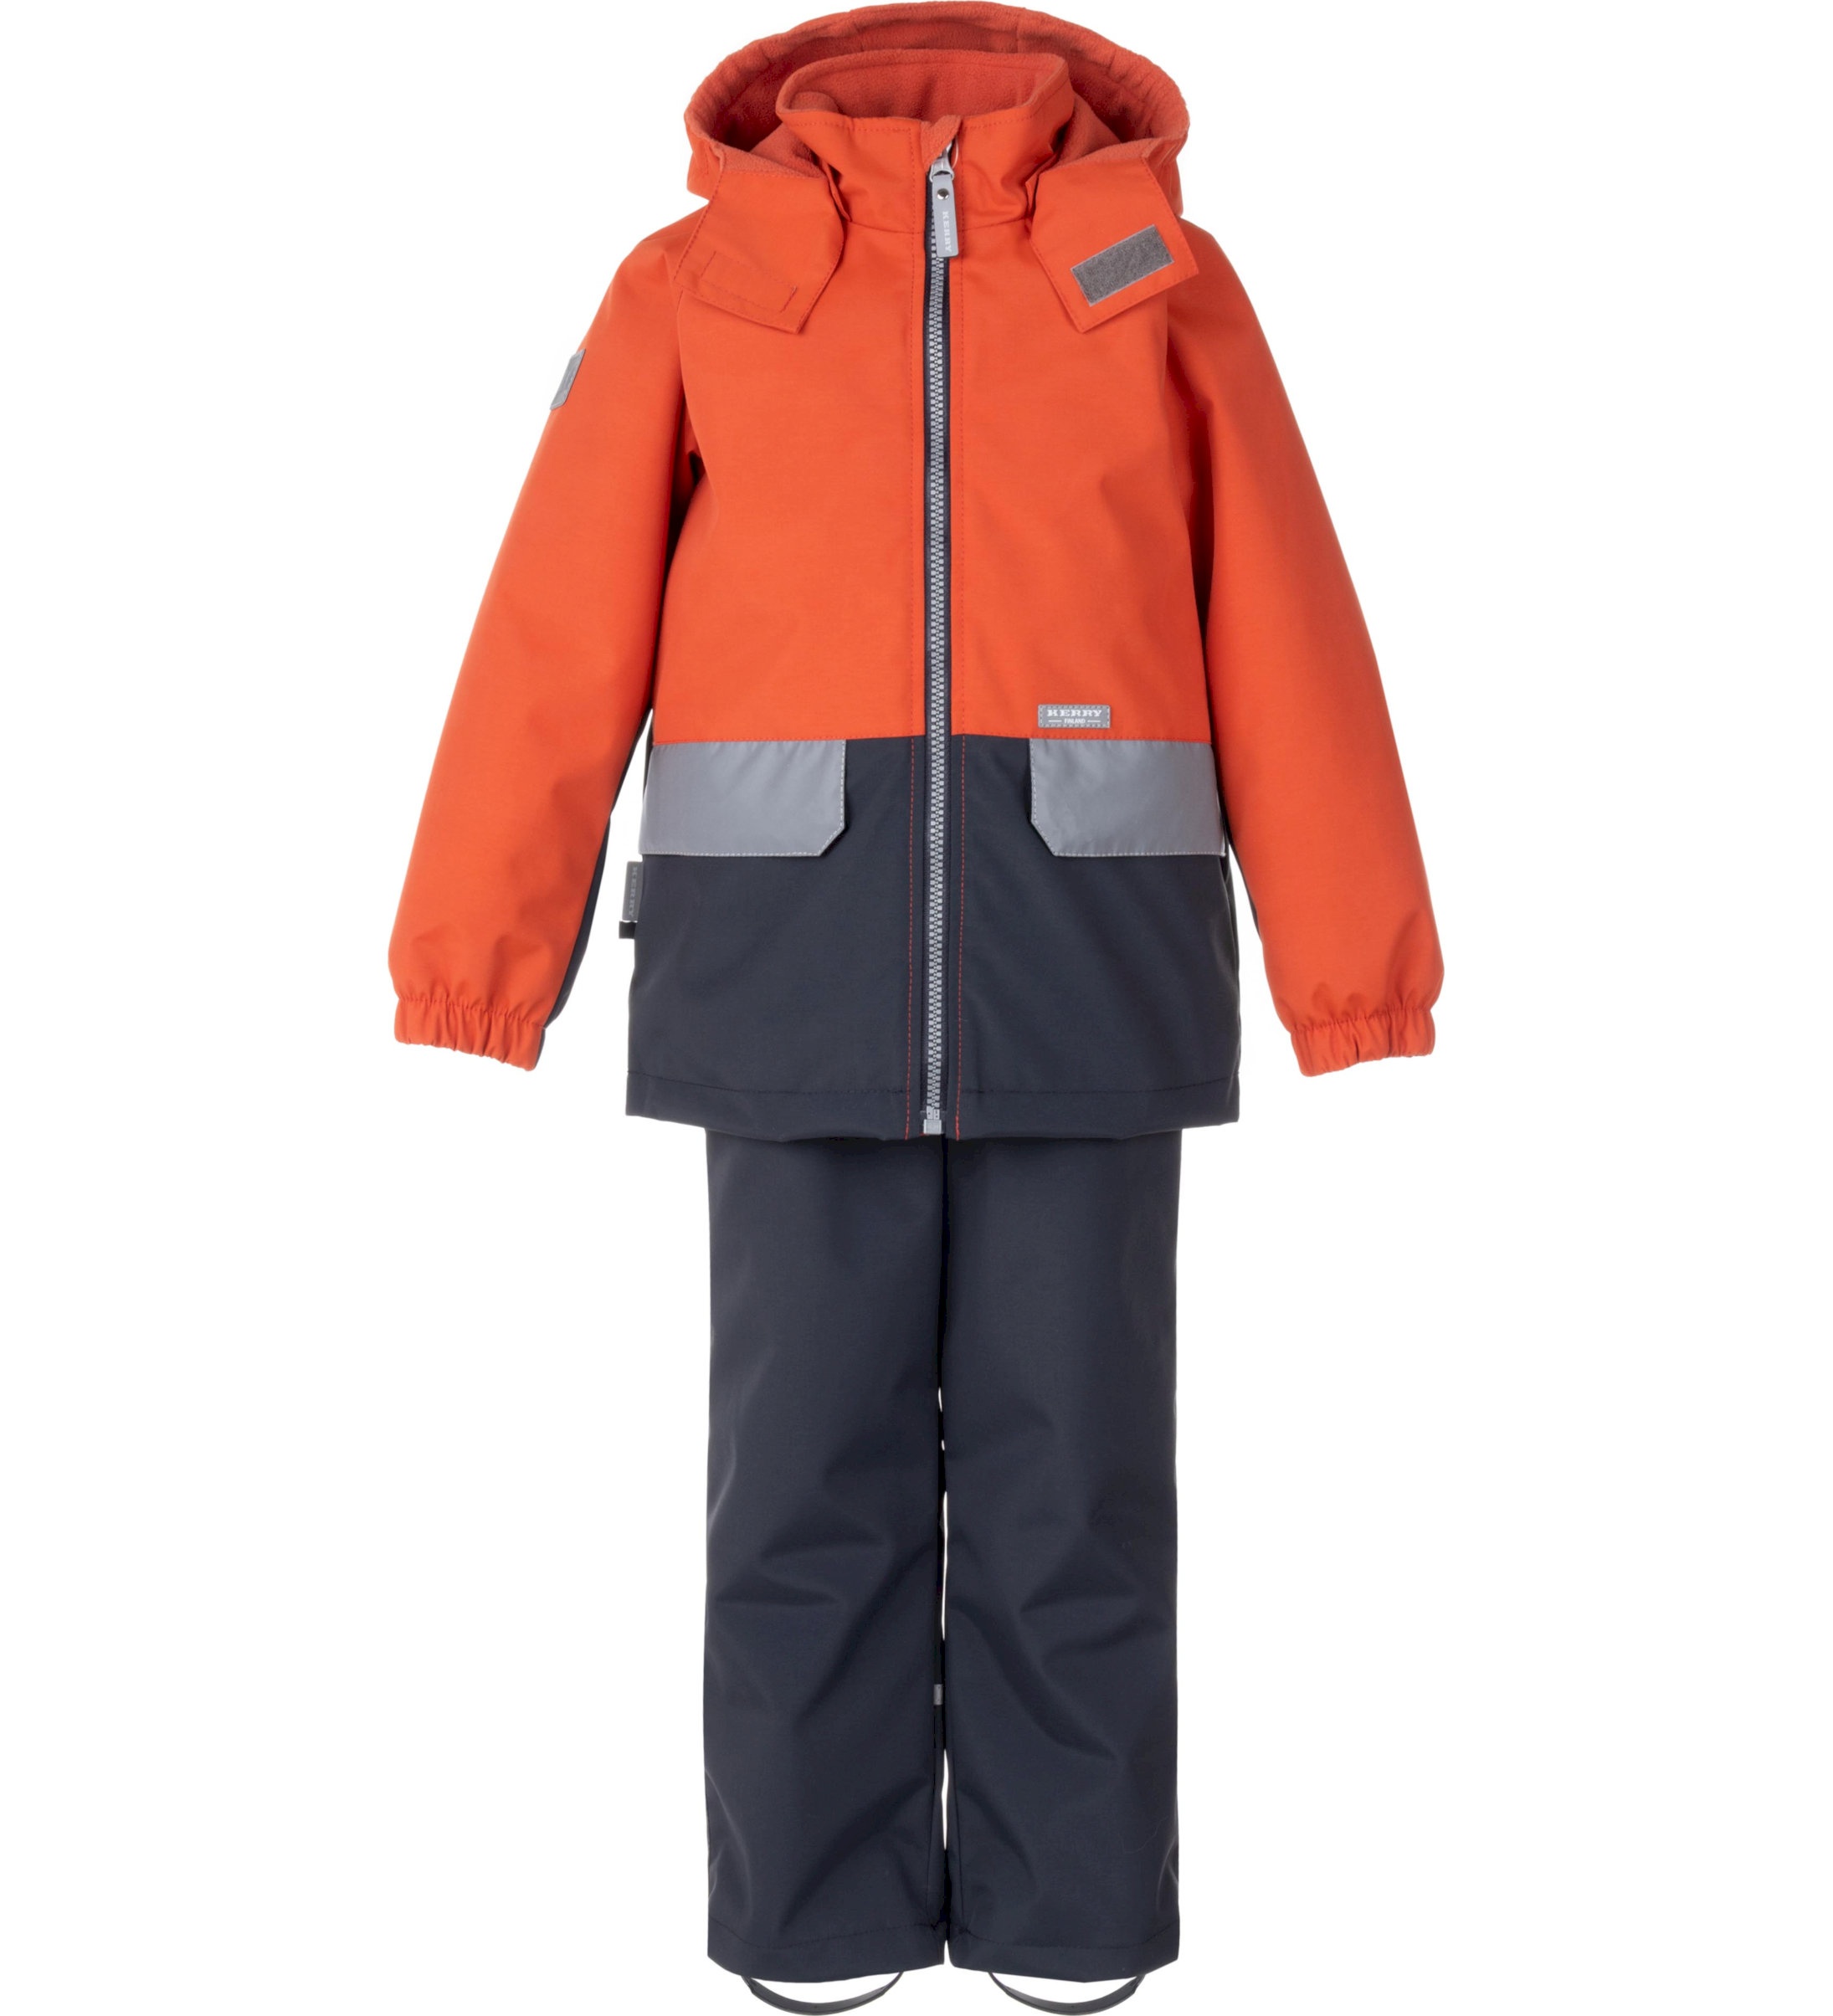 Комплект верхней одежды детский KERRY K24020, оранжевый; серый, 128